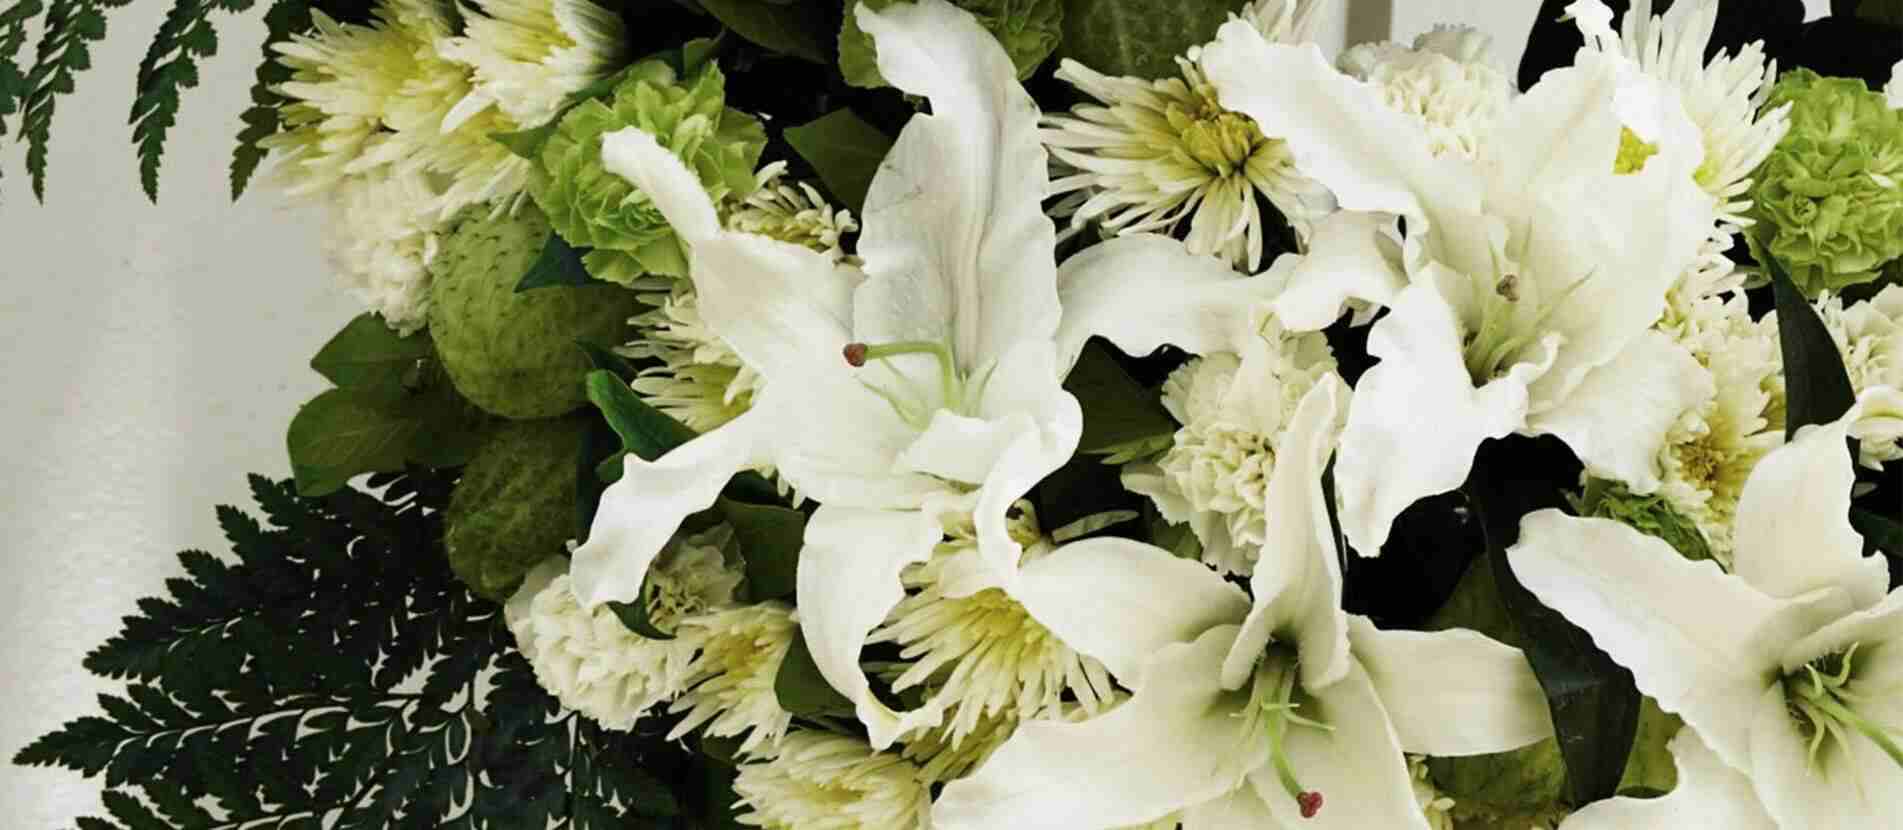 ดอกลิลลี่สีขาวล้อมด้วยดอกไม้หลายชนิดสำหรับจัดลงในพวงหรีดไว้อาลัย